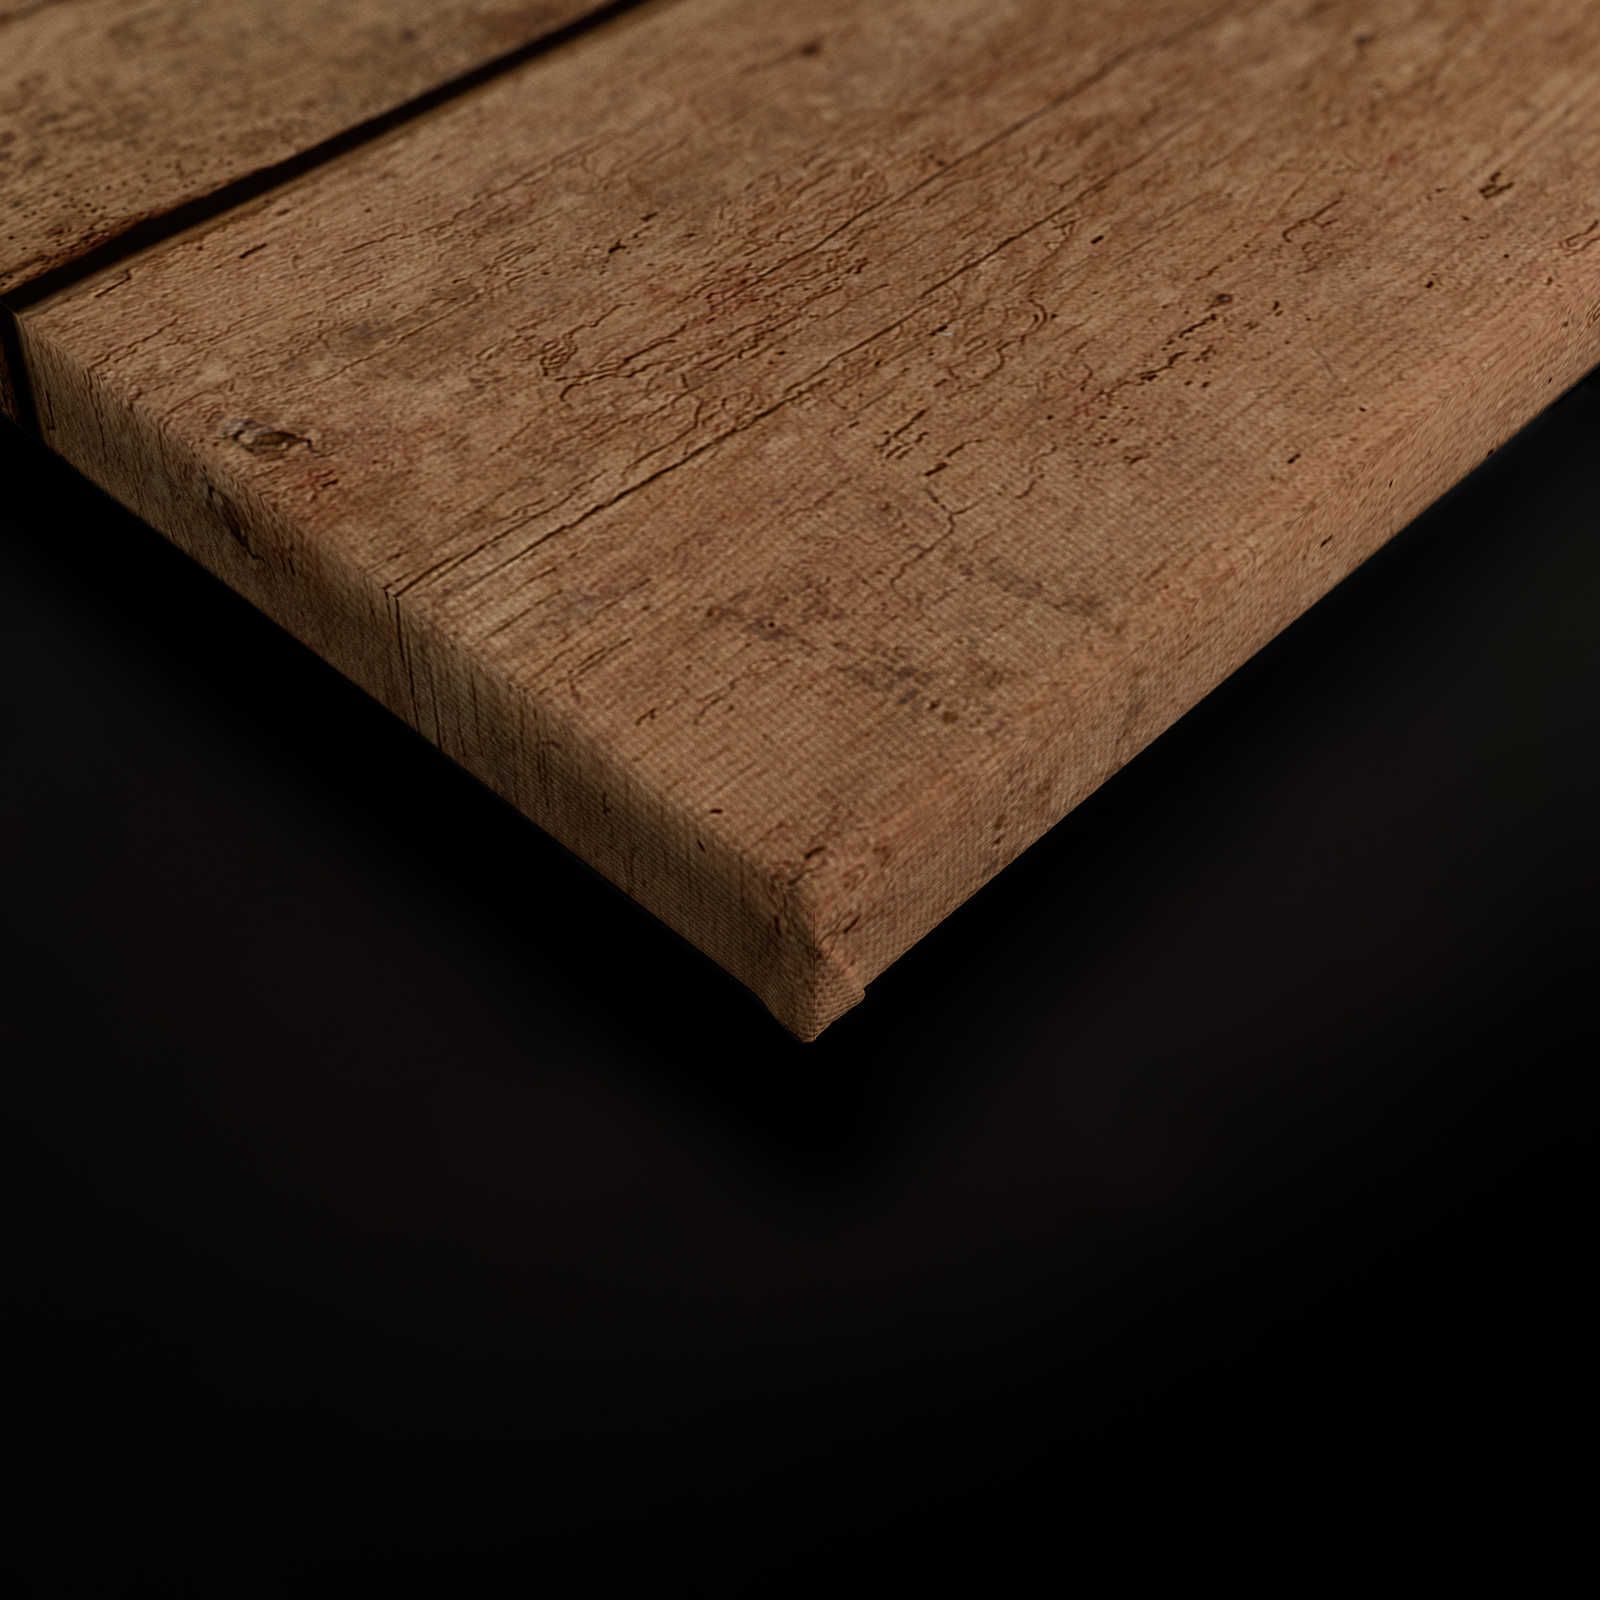             Tableau toile planches de chêne foncé - 0,90 m x 0,60 m
        